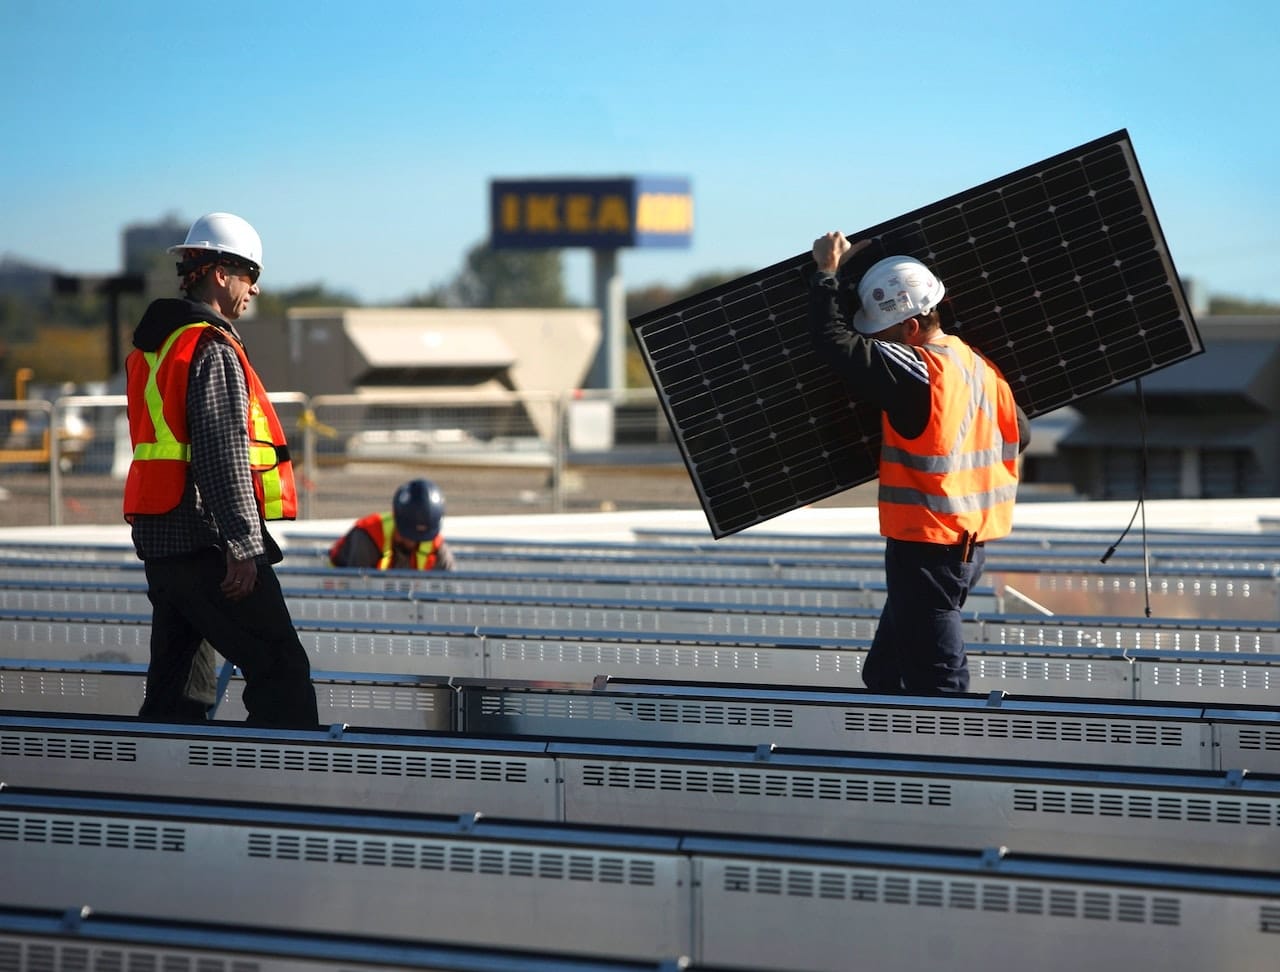 IKEA "SOLSTRÅLE": Solarenergie für Eigenheim und Elektroauto